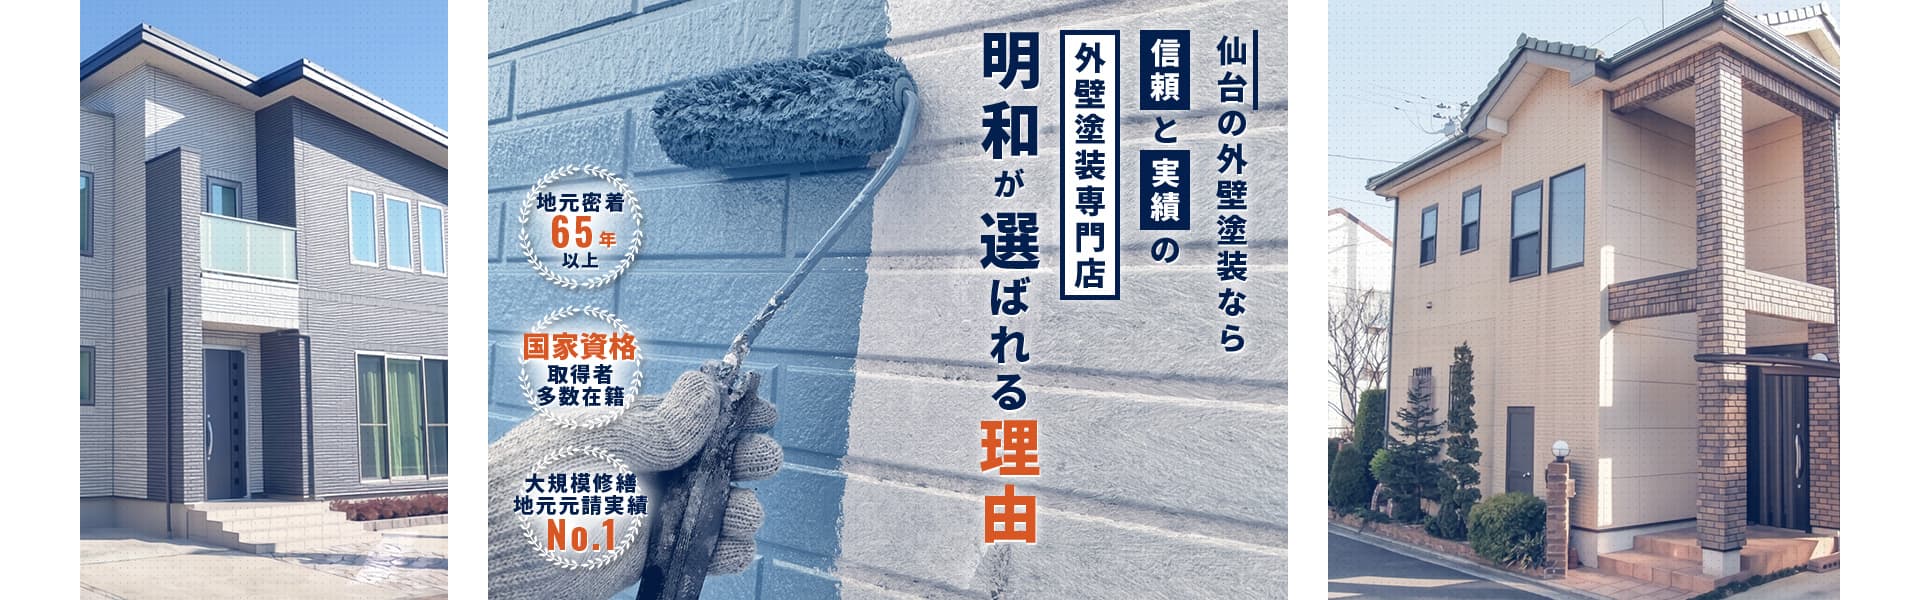 仙台の外壁塗装なら信頼と実績の外壁塗装専門店明和が選ばれる理由　地元密着65年以上、国家資格取得者多数在籍、大規模修繕実績No.1